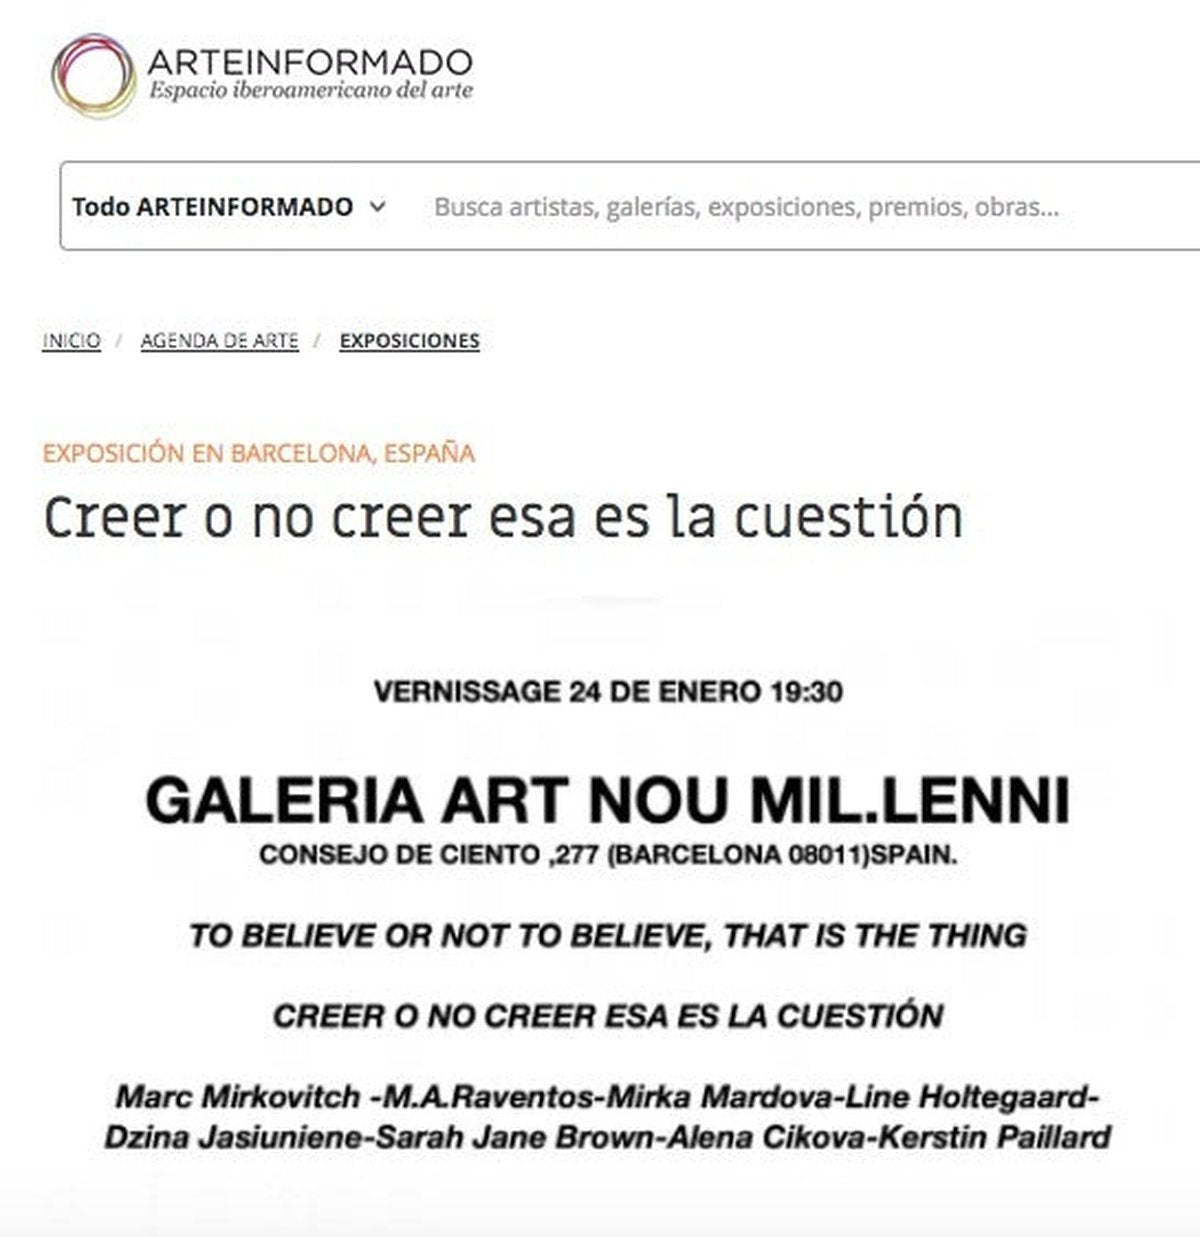 Creer o no creer esa es la cuestión exhibition featured on Arteinformando